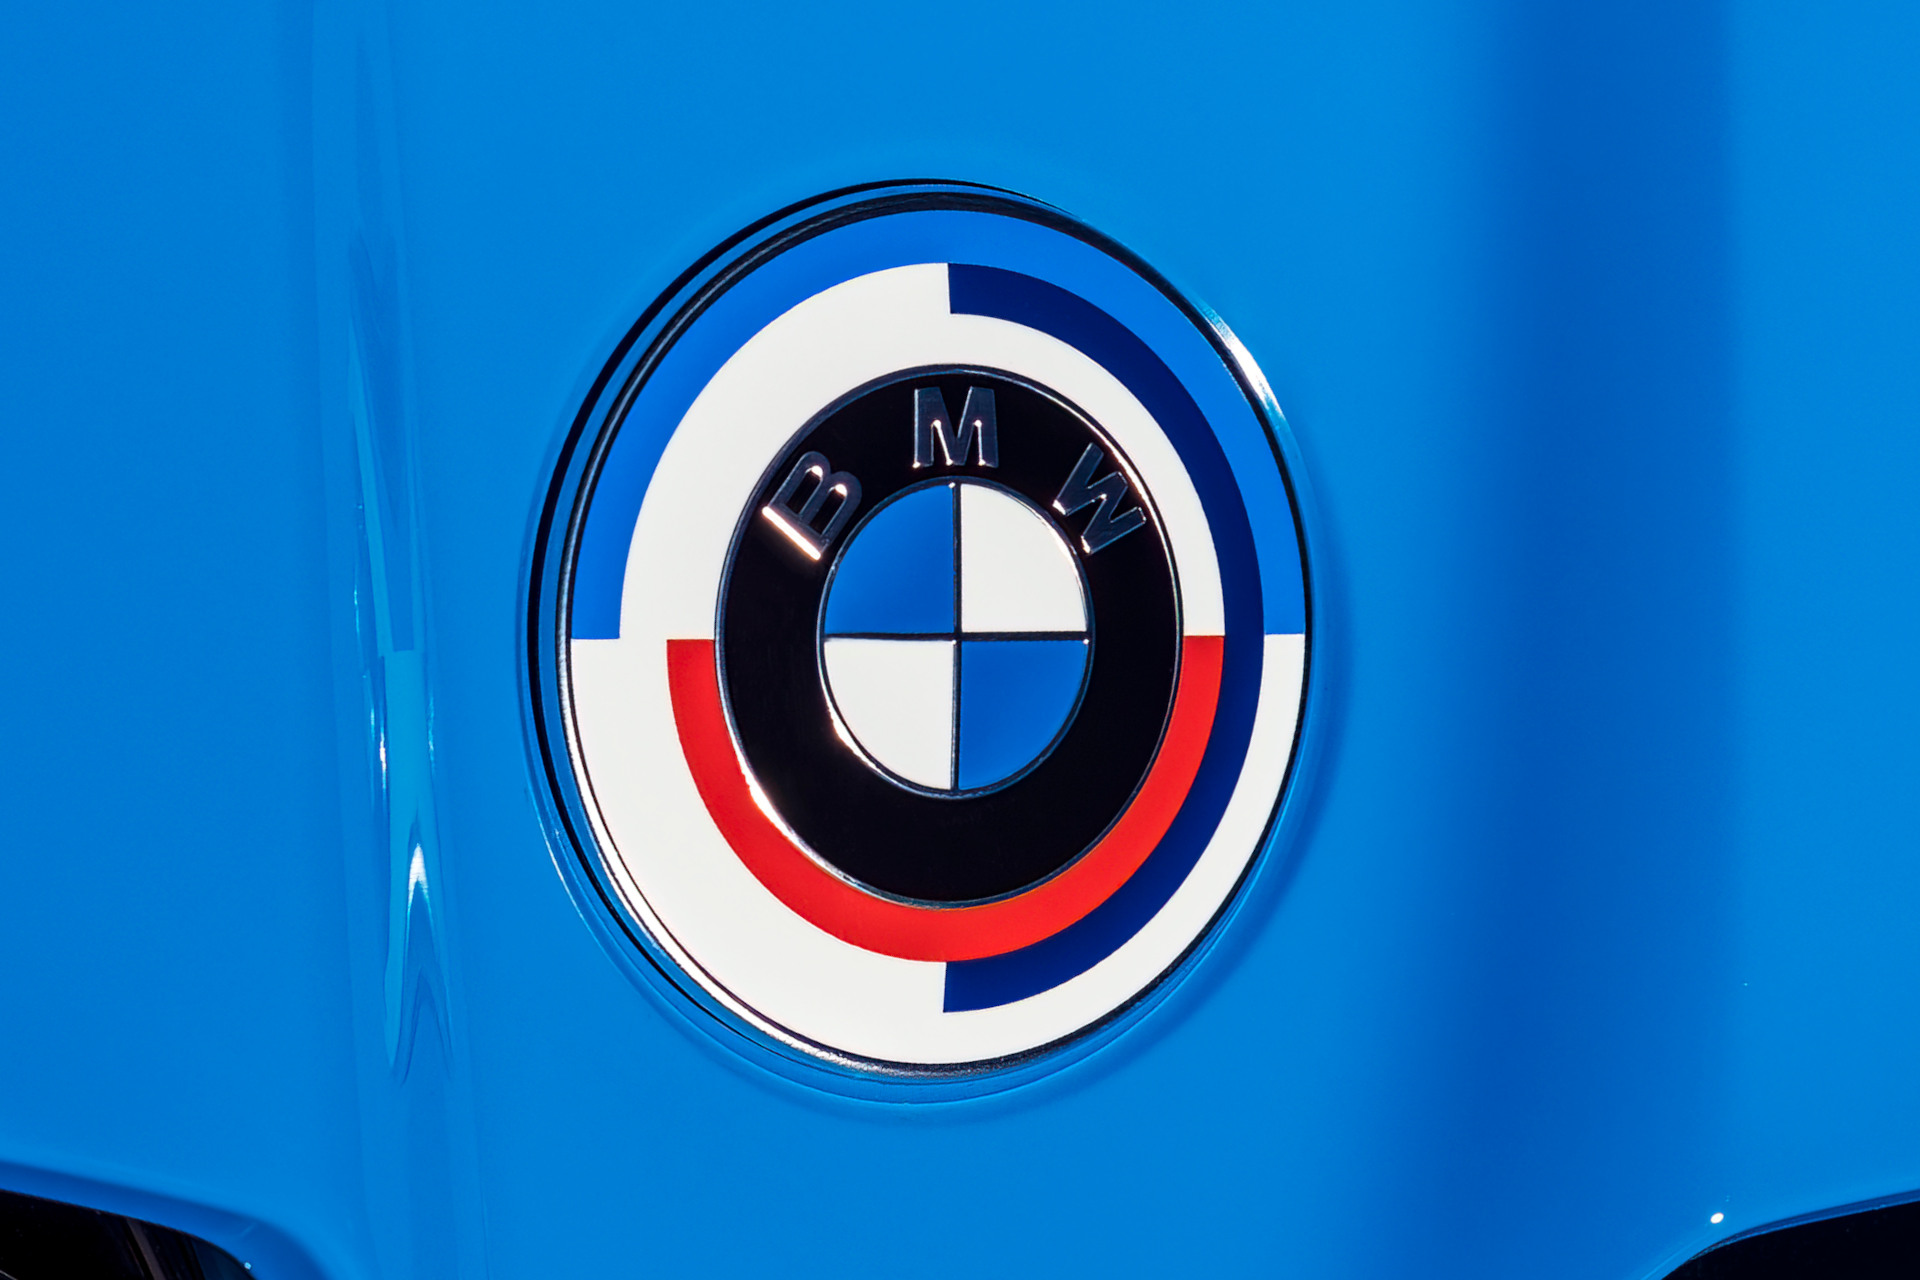 https://cdn.bimmertoday.de/wp-content/uploads/2022/01/BMW-M-50-Jahre-Emblem-2022-Motorsport-Logo.jpg